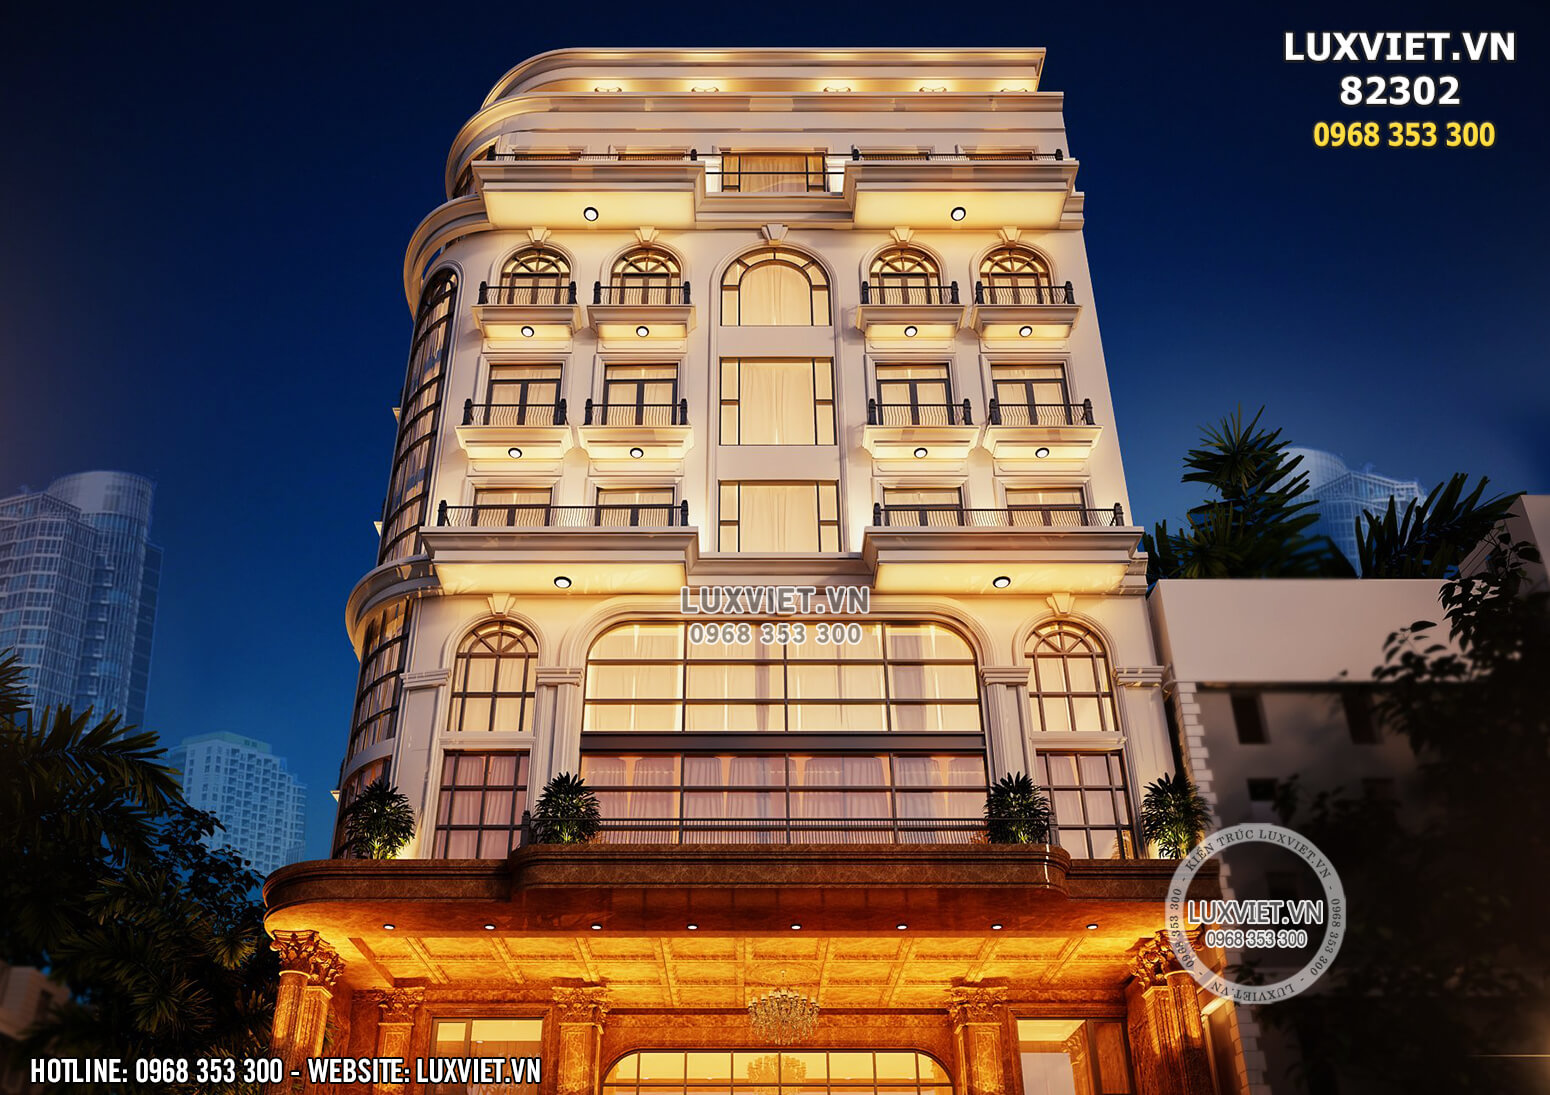 Hình ảnh: Khối hình kiến trúc cân đối của mẫu thiết kế khách sạn 3 sao tân cổ điển